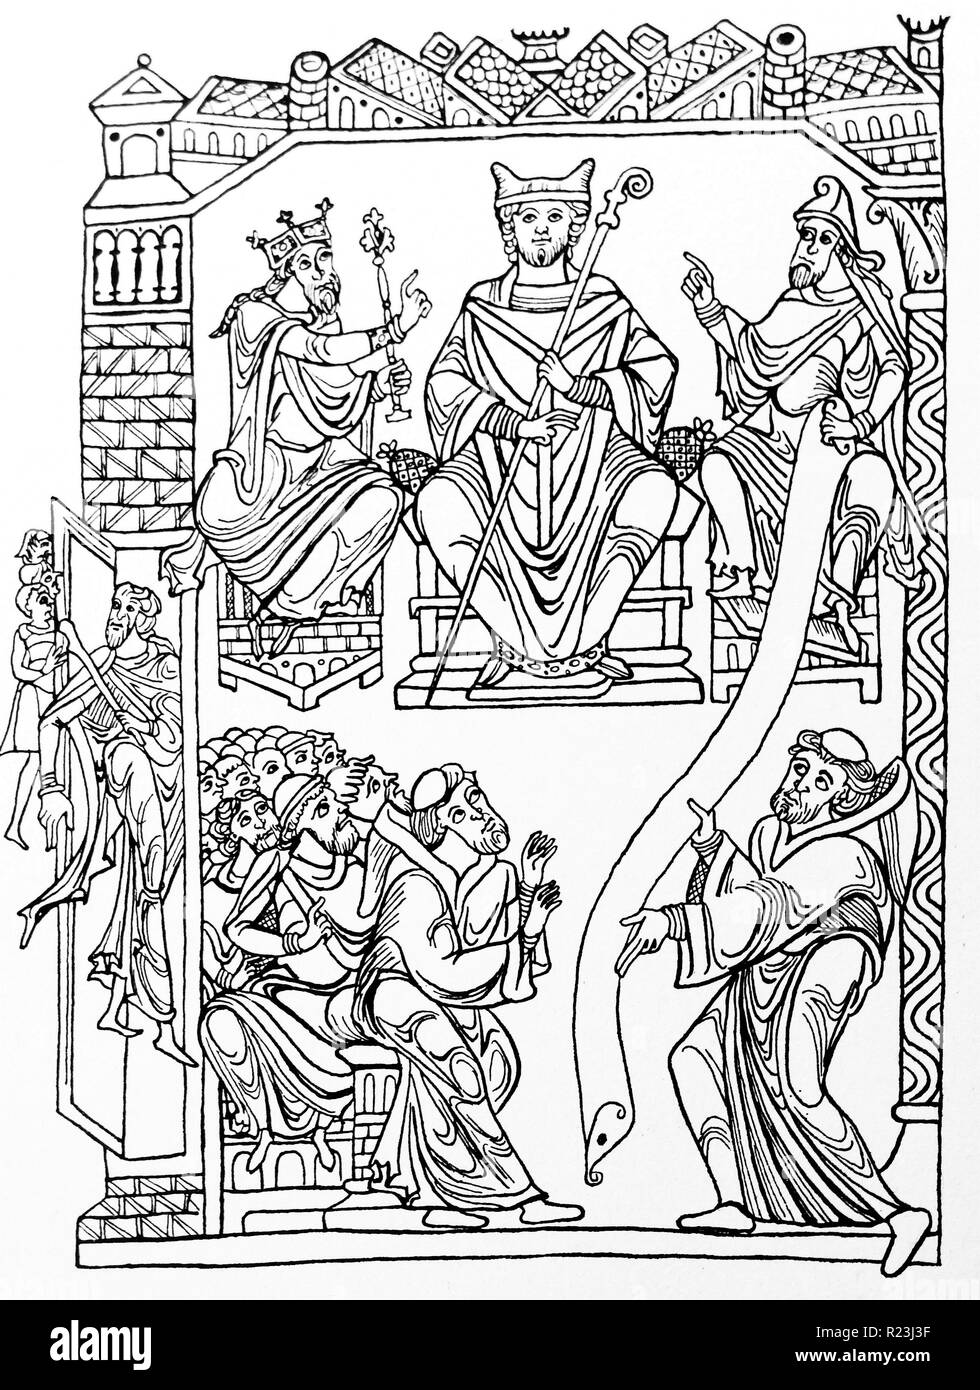 Dibujo de líneas de San Benito hace entrega de su libro (la regla) a un grupo de monjes que simboliza la fundación del monaquismo occidental. Fecha del siglo XII. Foto de stock